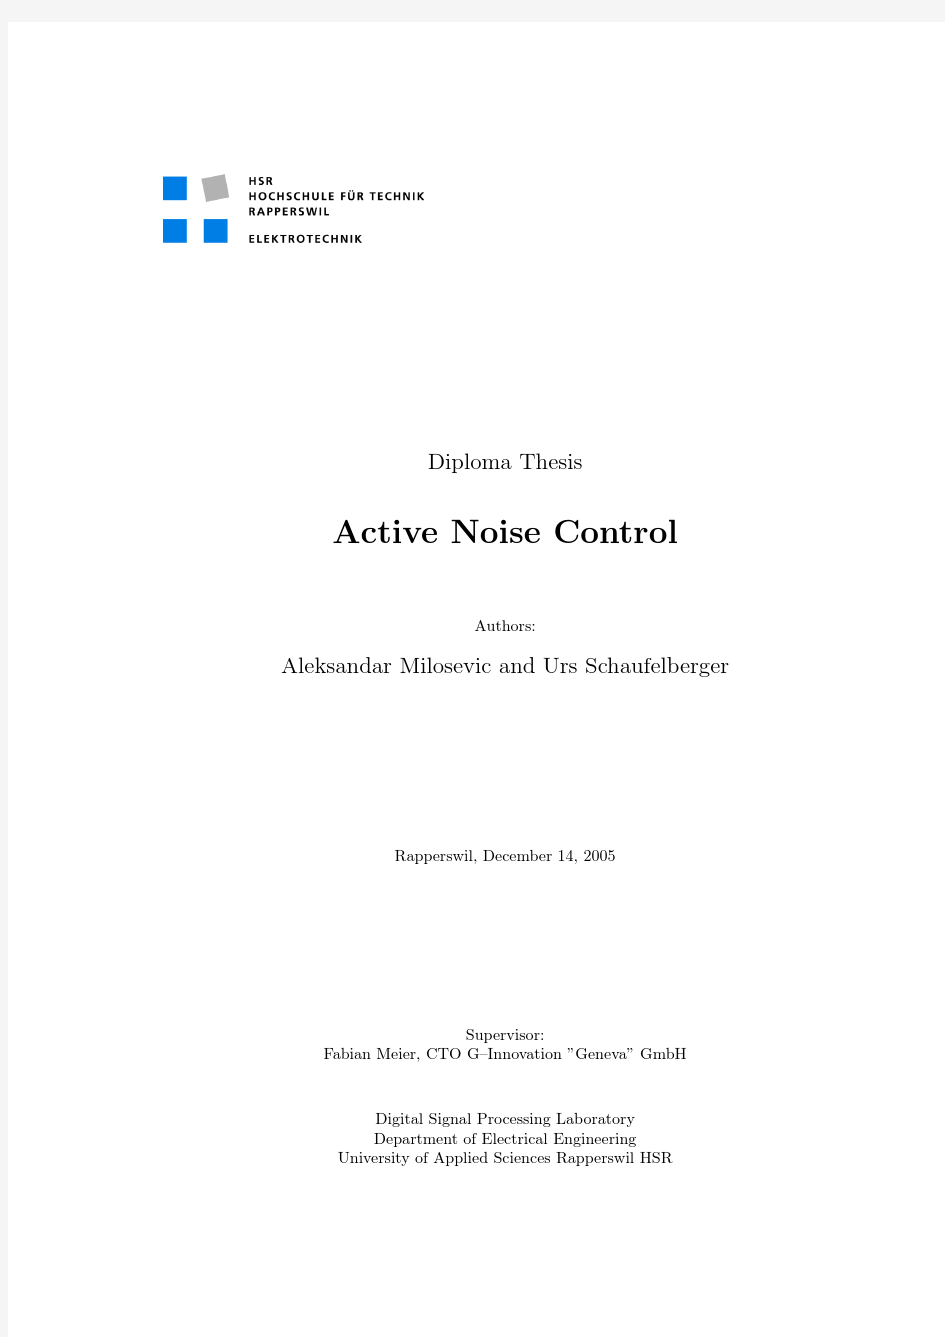 Active Noise Control